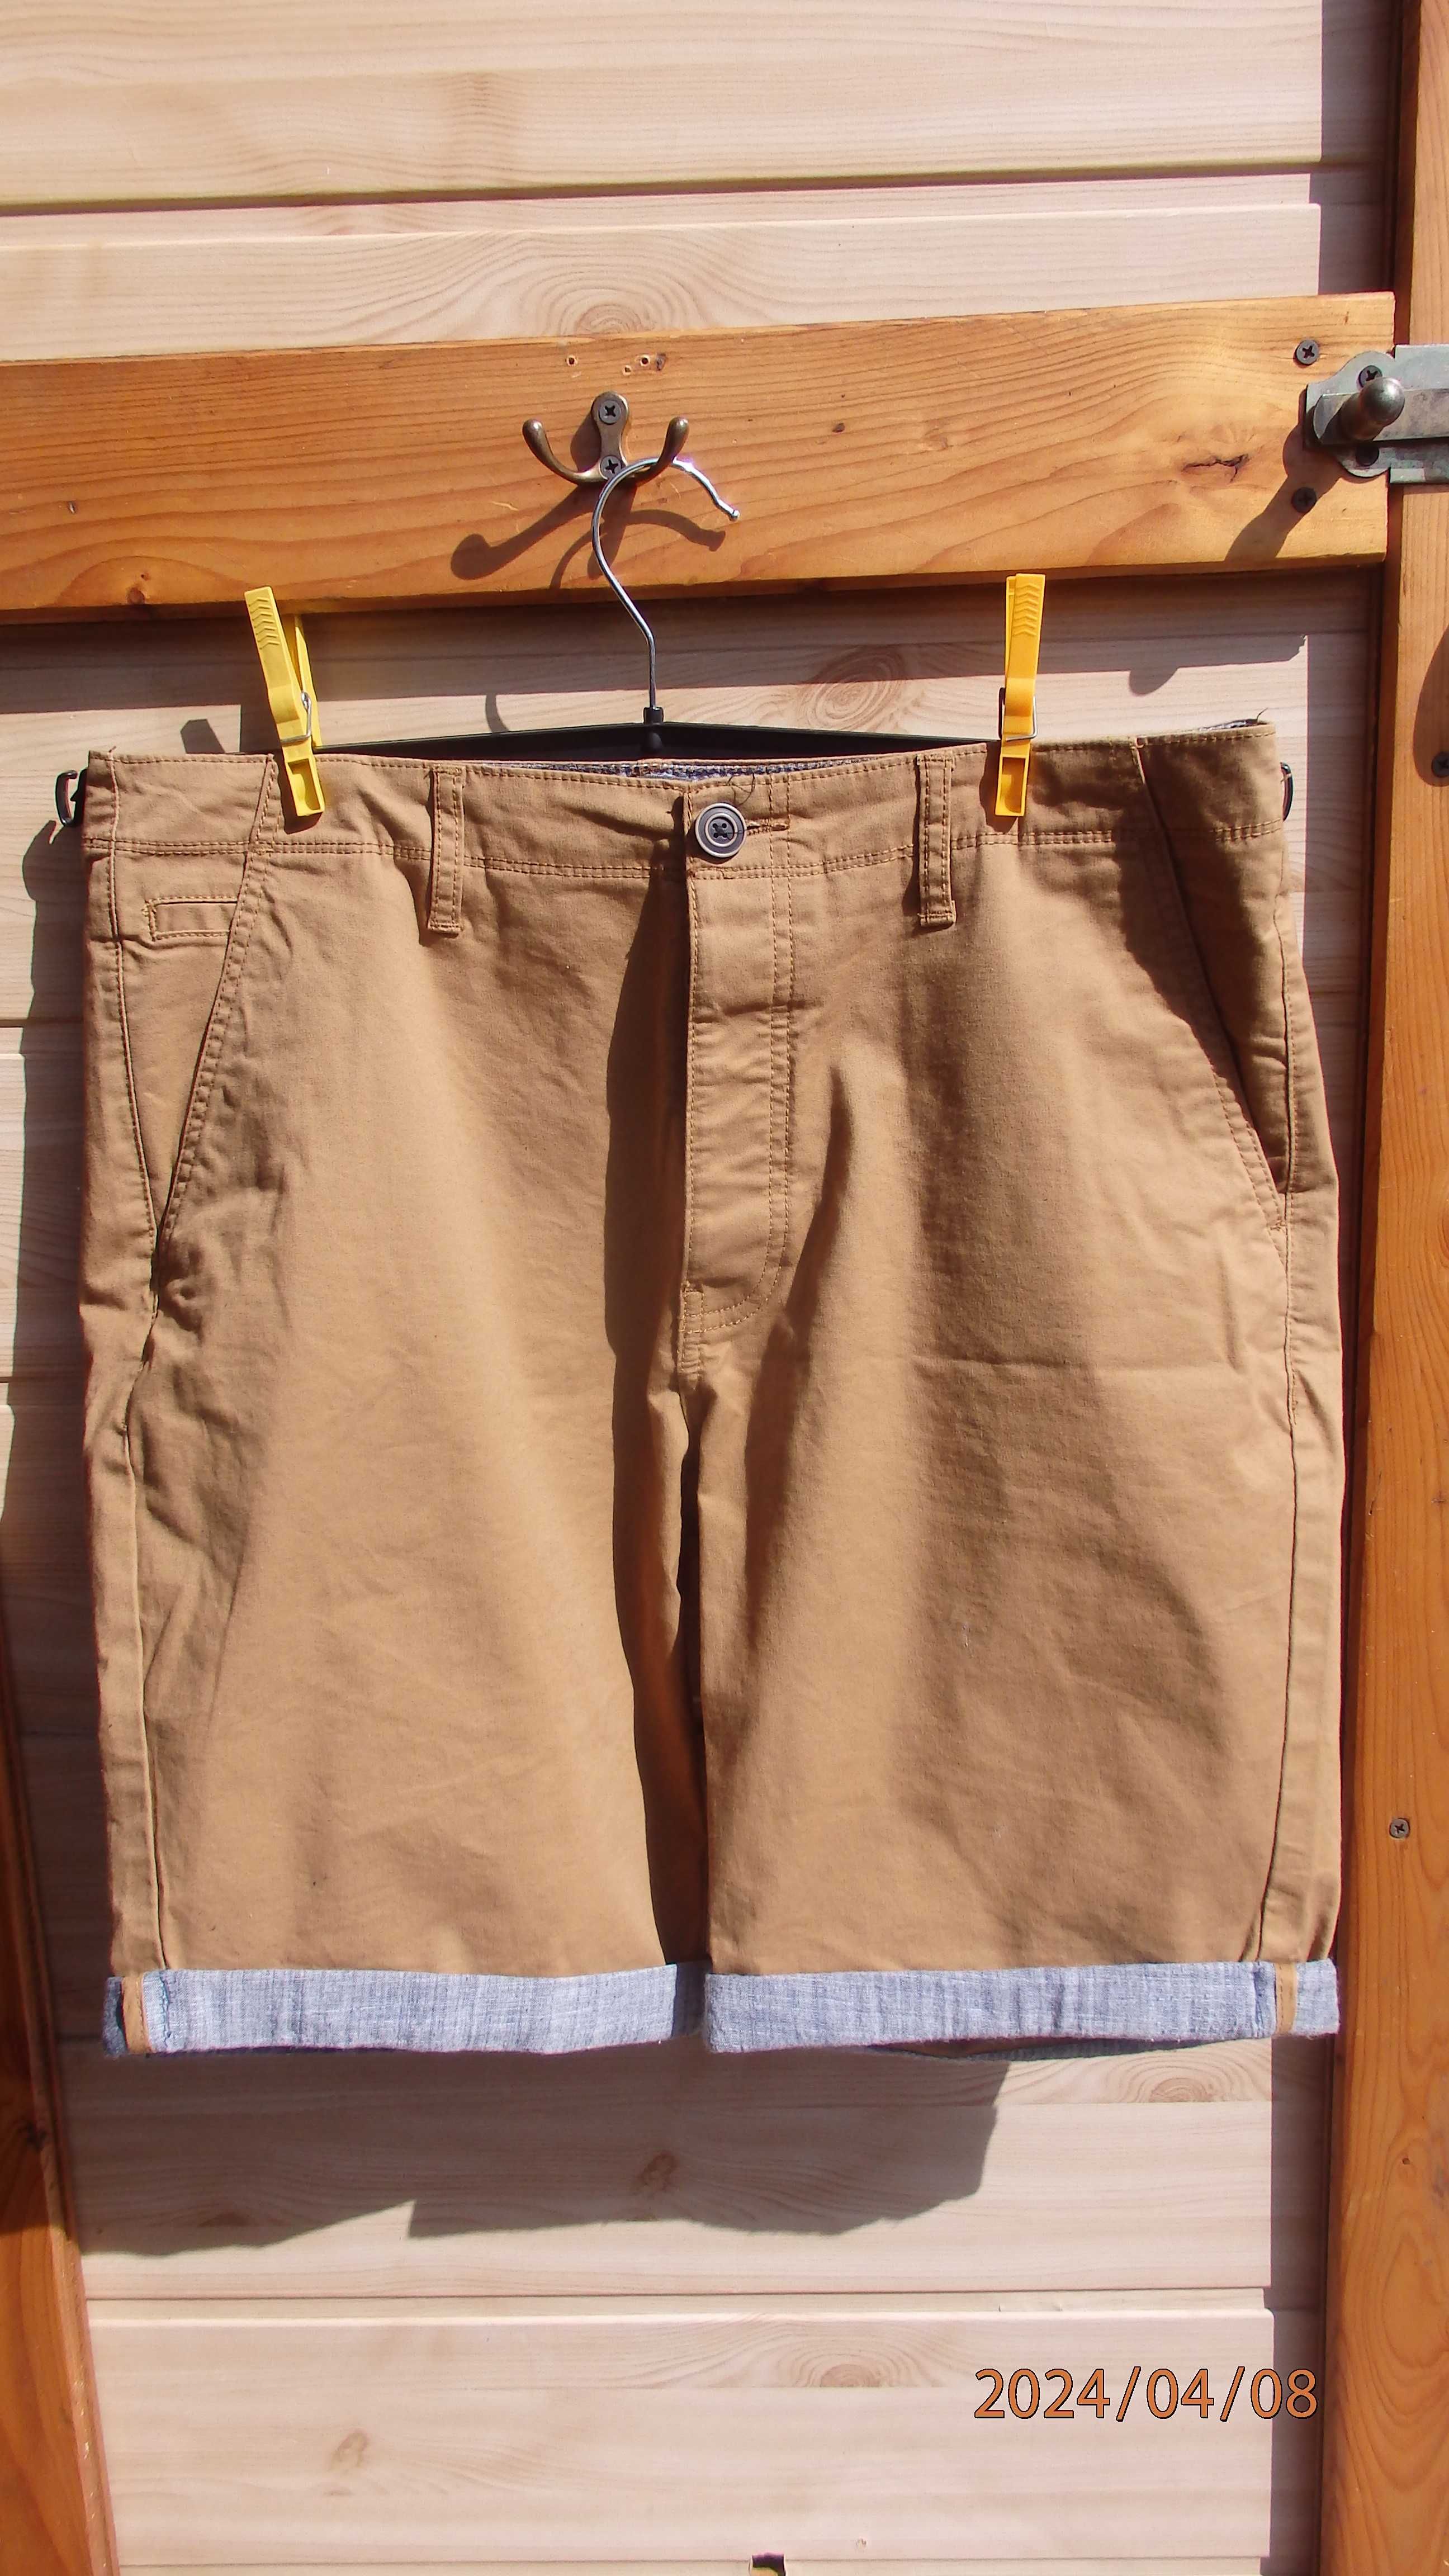 Spodnie męskie krótkie firmy Primark rozmiar Eur 44 (ok.88cm w pasie)